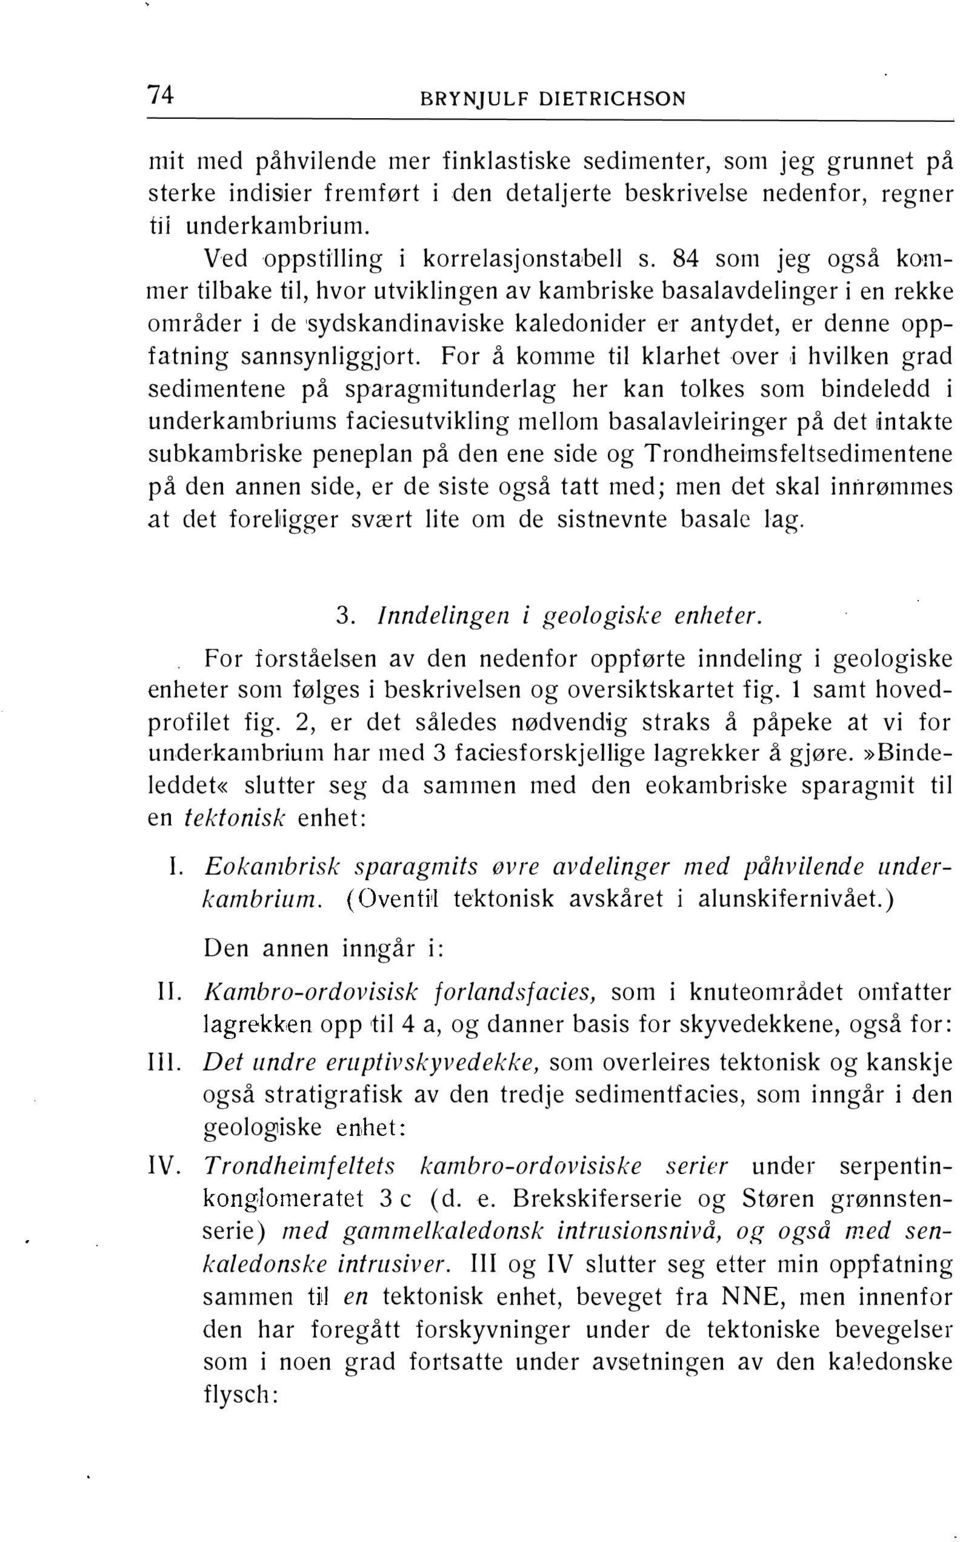 84 som jeg også kommer tilbake til, hvor utviklingen av kambriske basalavdelinger i en rekke områder i de sydskandinaviske kaledonider er antydet, er denne oppfatning sannsynliggjort.